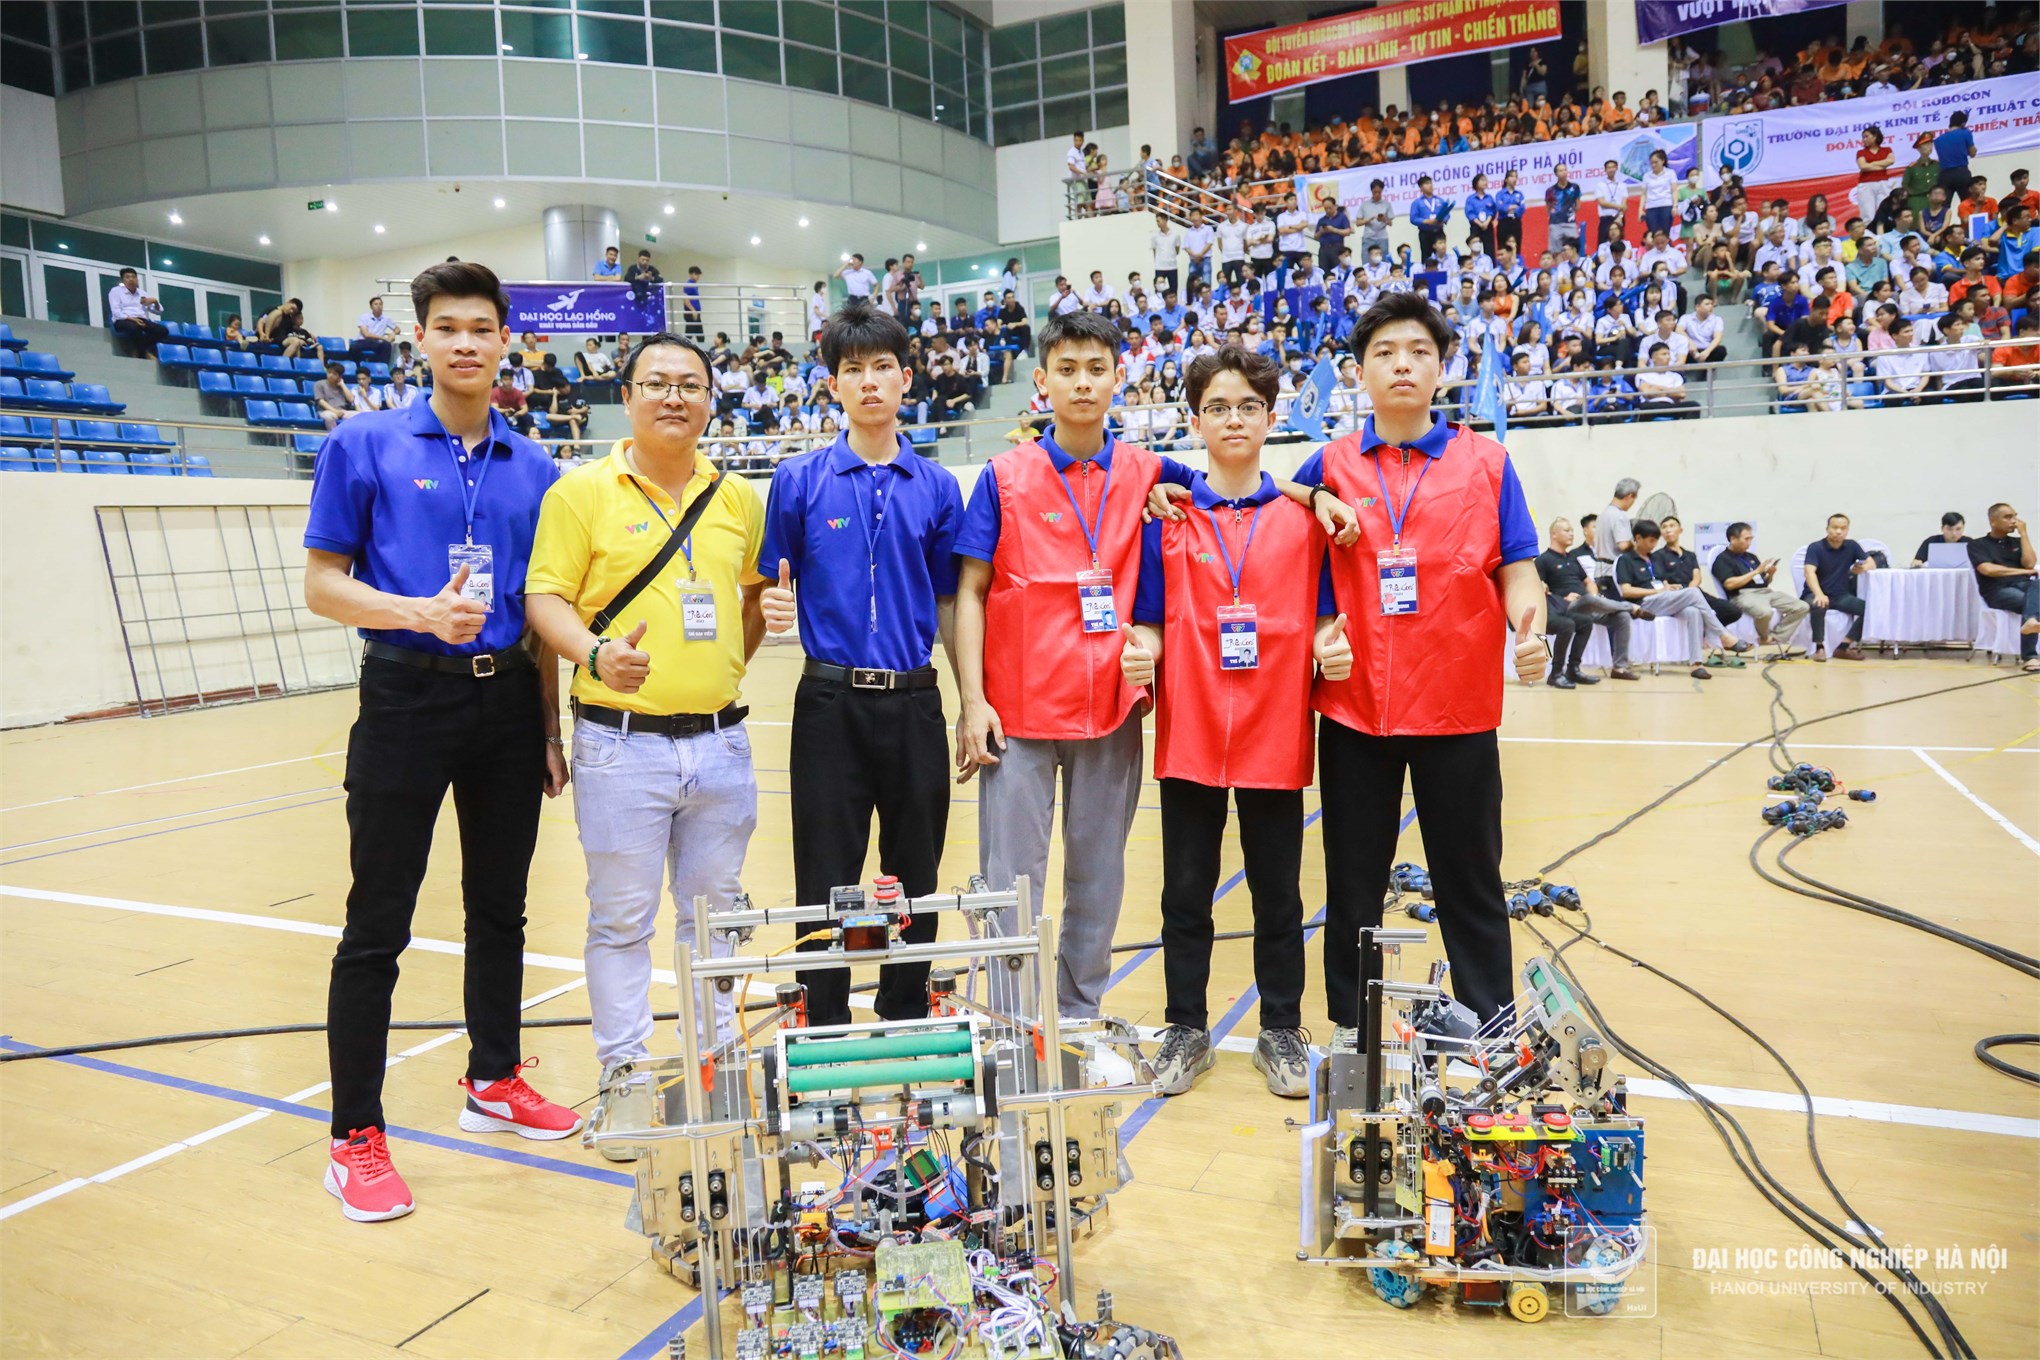 Đội tuyển DCN-DREAM khoa Cơ khí giành giải Robot điều khiển bằng tay xuất sắc nhất